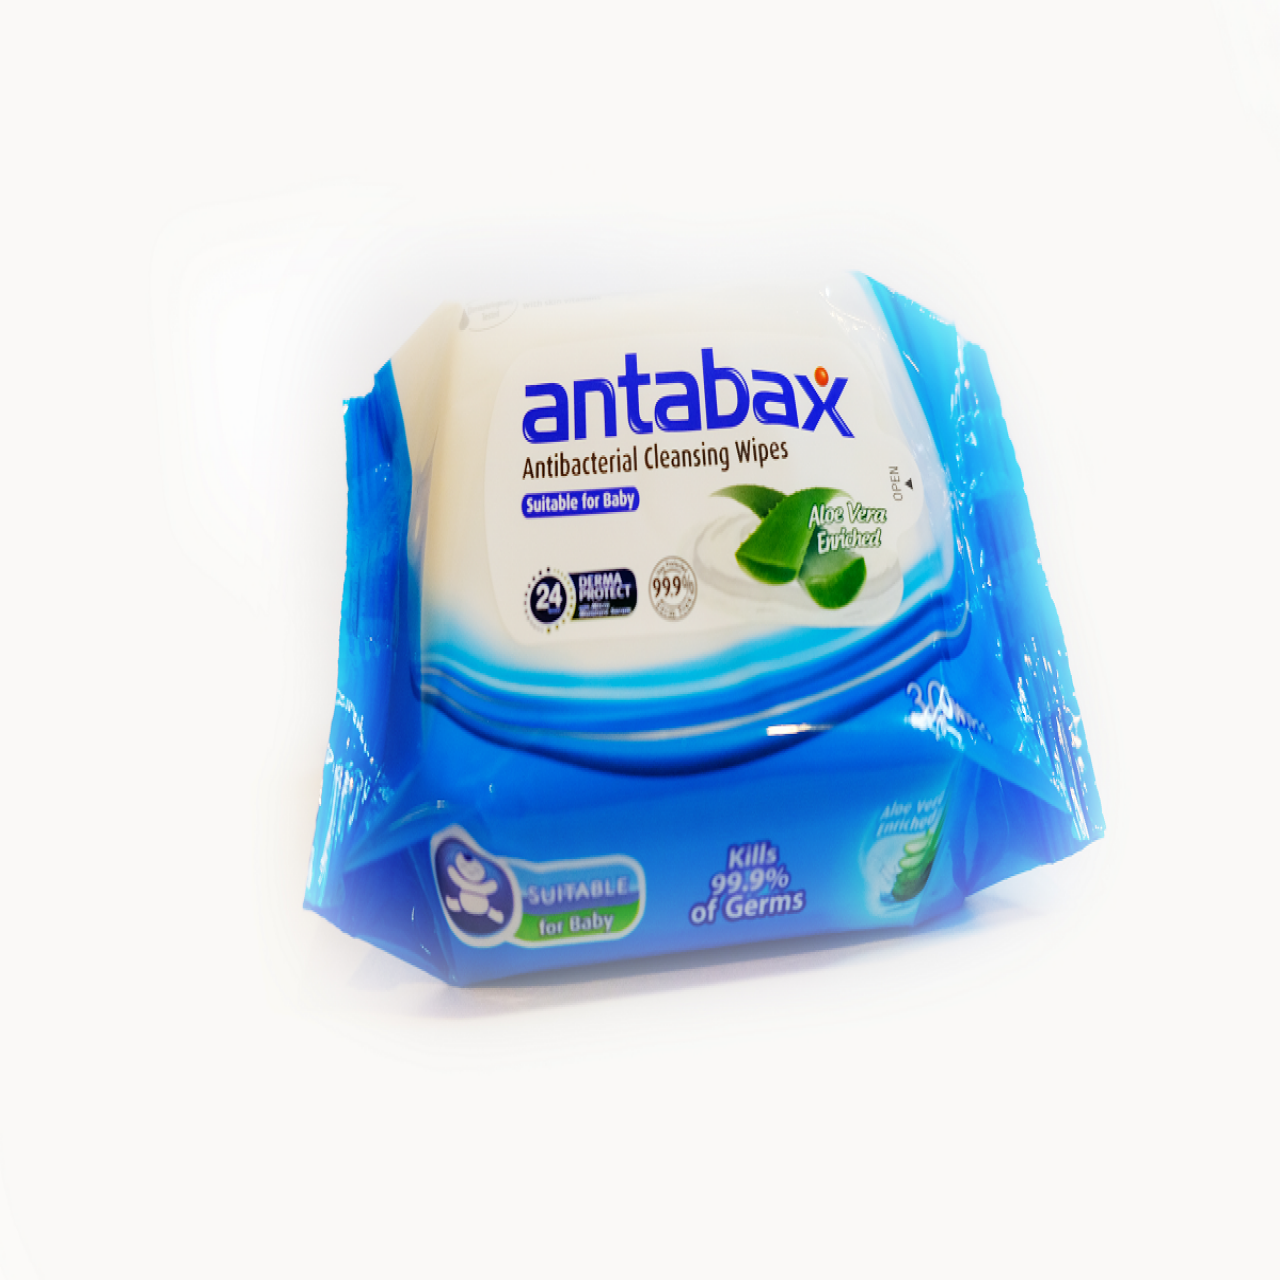 ANTABAX ANTIBACTERIAL CLEANSING WIPES 30S